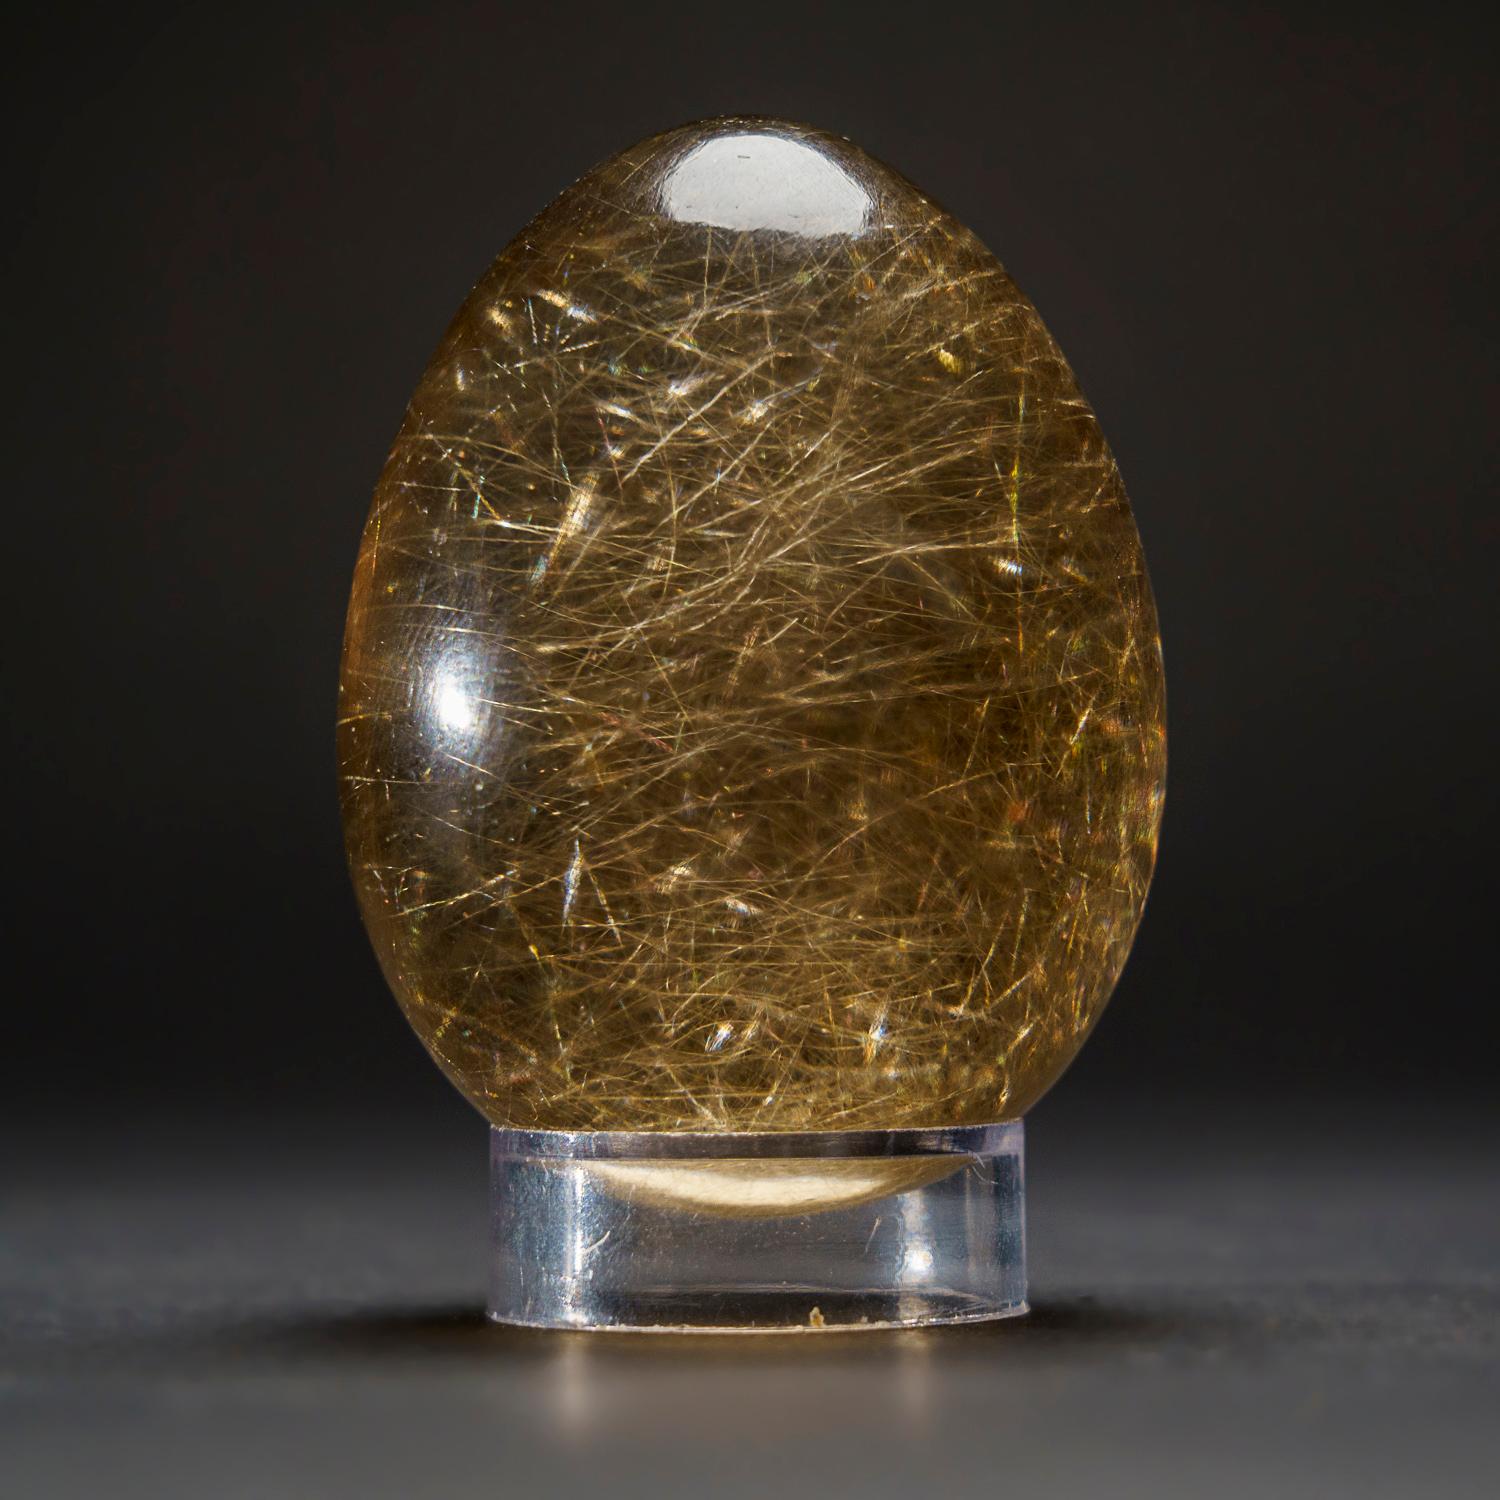 Contemporary Genuine Polished Rutile Smoky Quartz Egg from Brazil (221.9 grams) For Sale